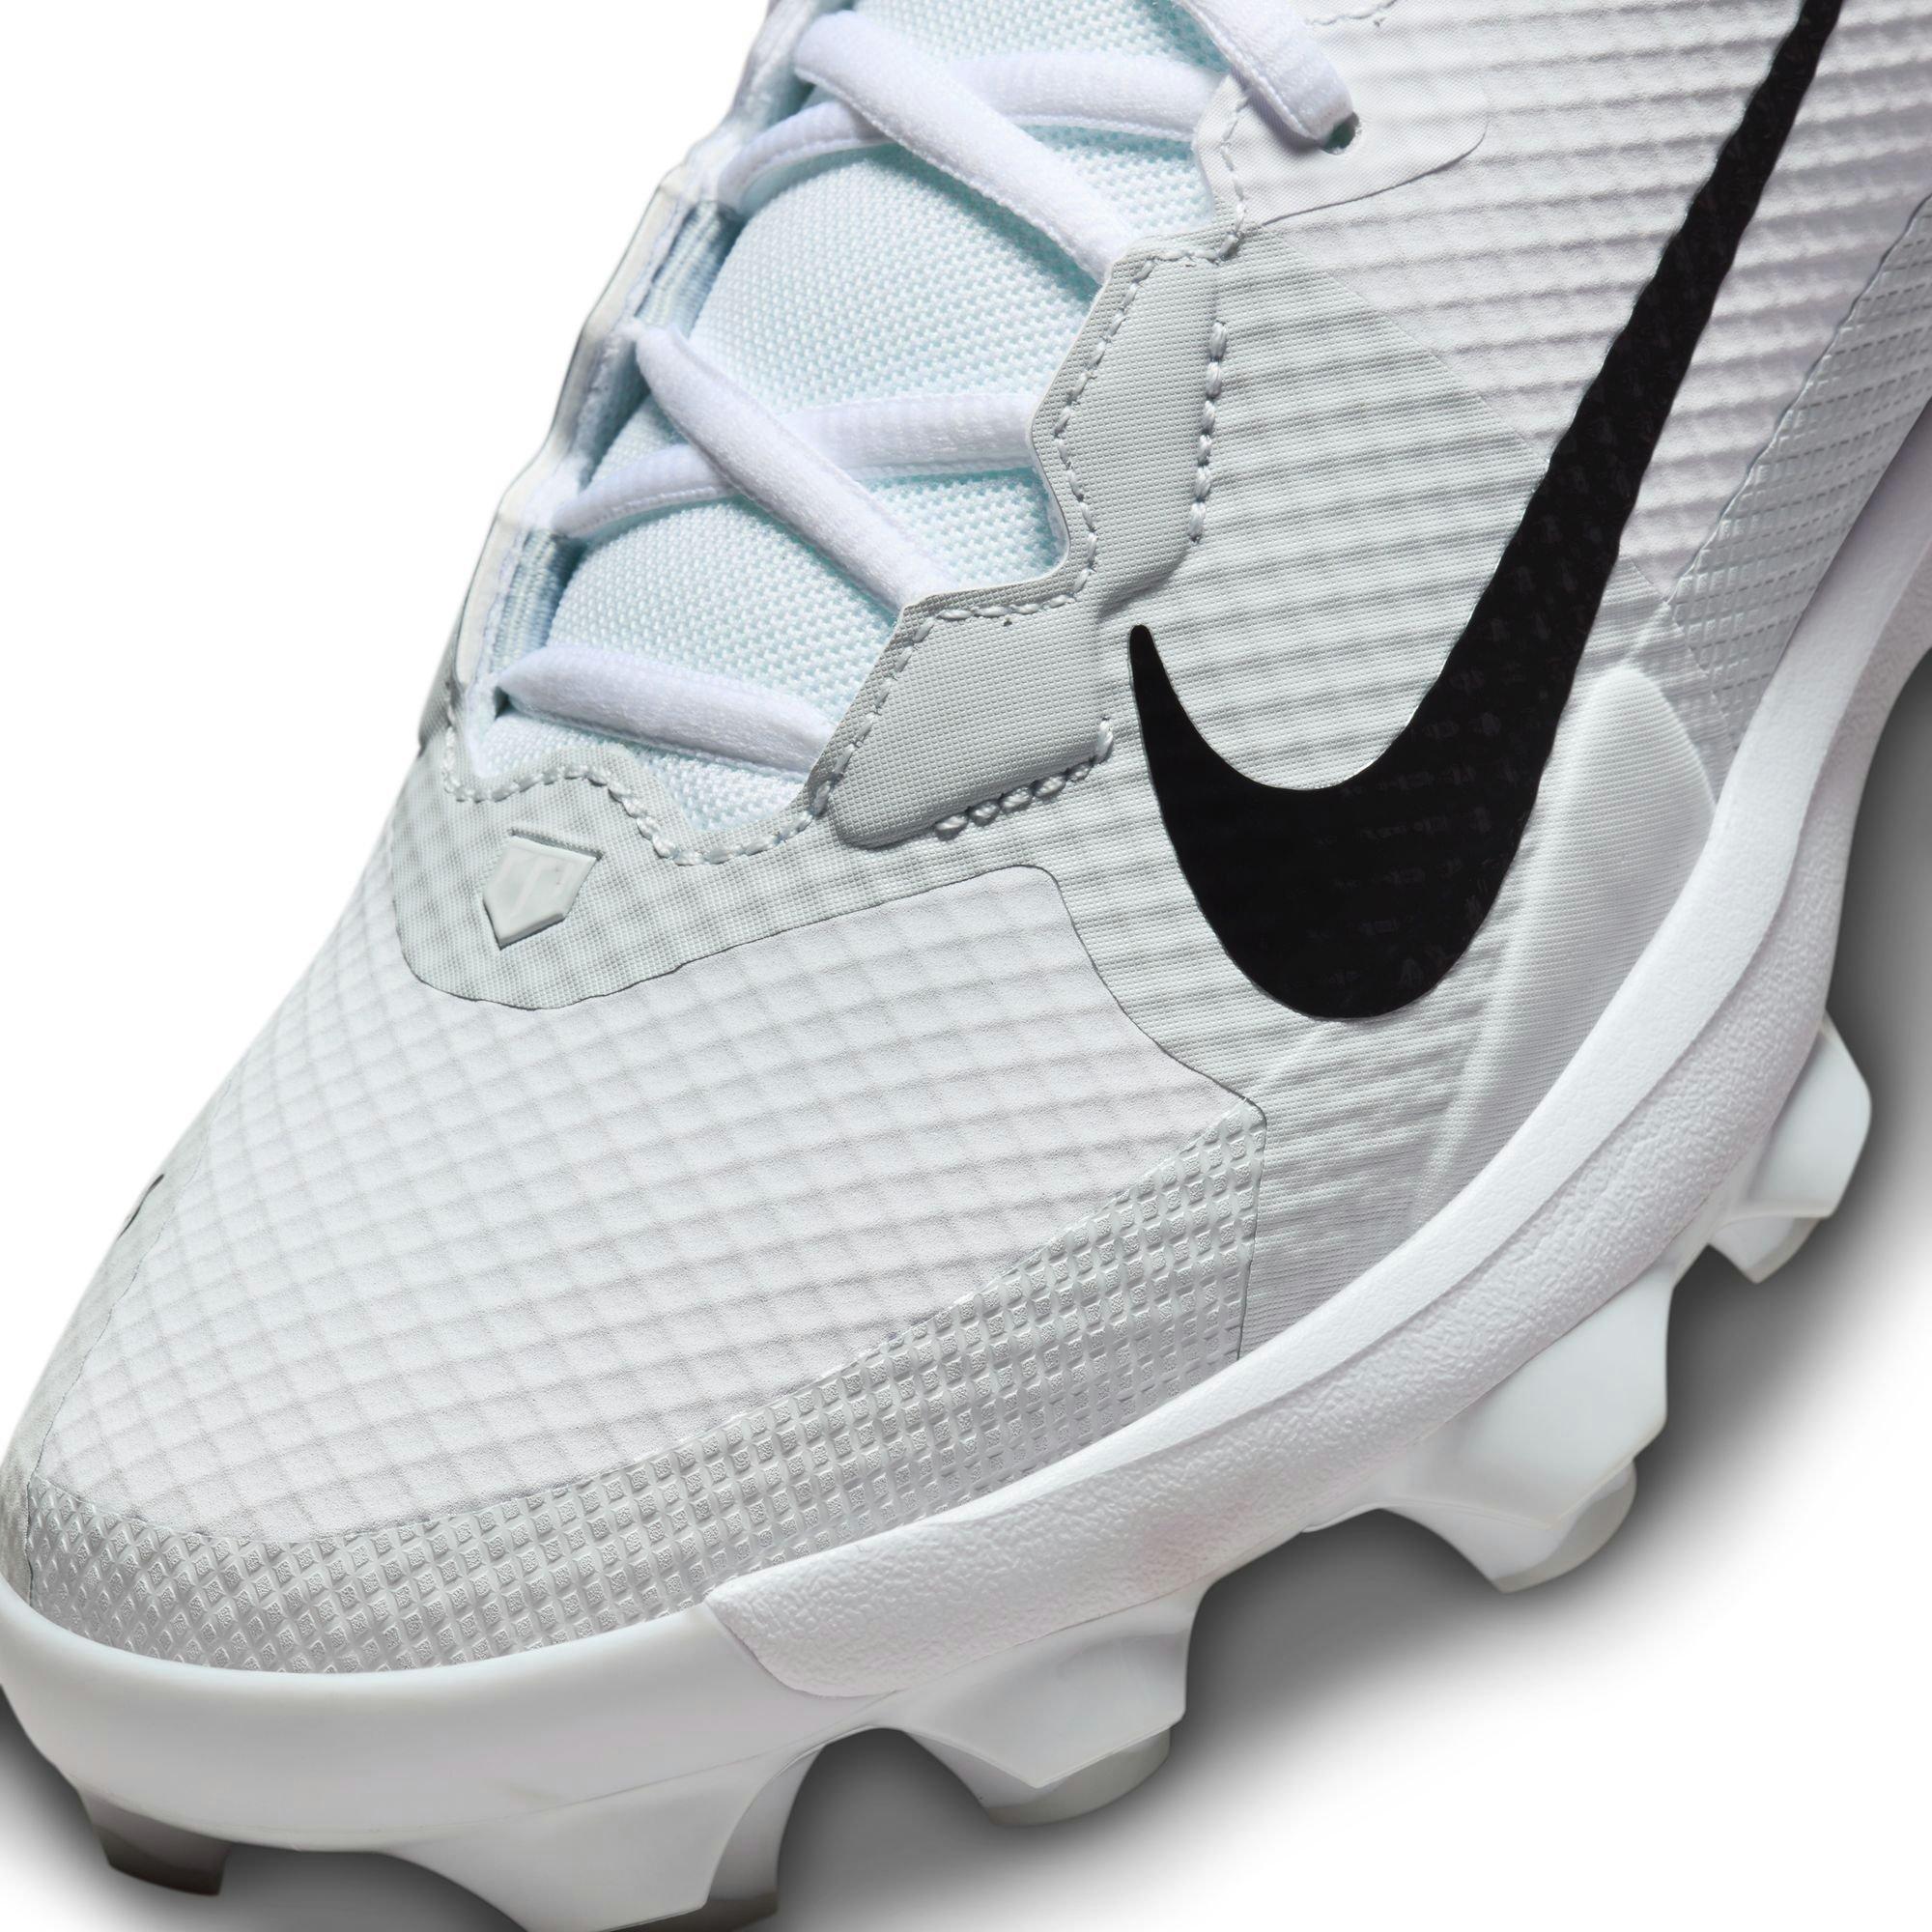 Nike Force Trout 7 Pro MCS White/Black Men's Baseball Cleat - Hibbett